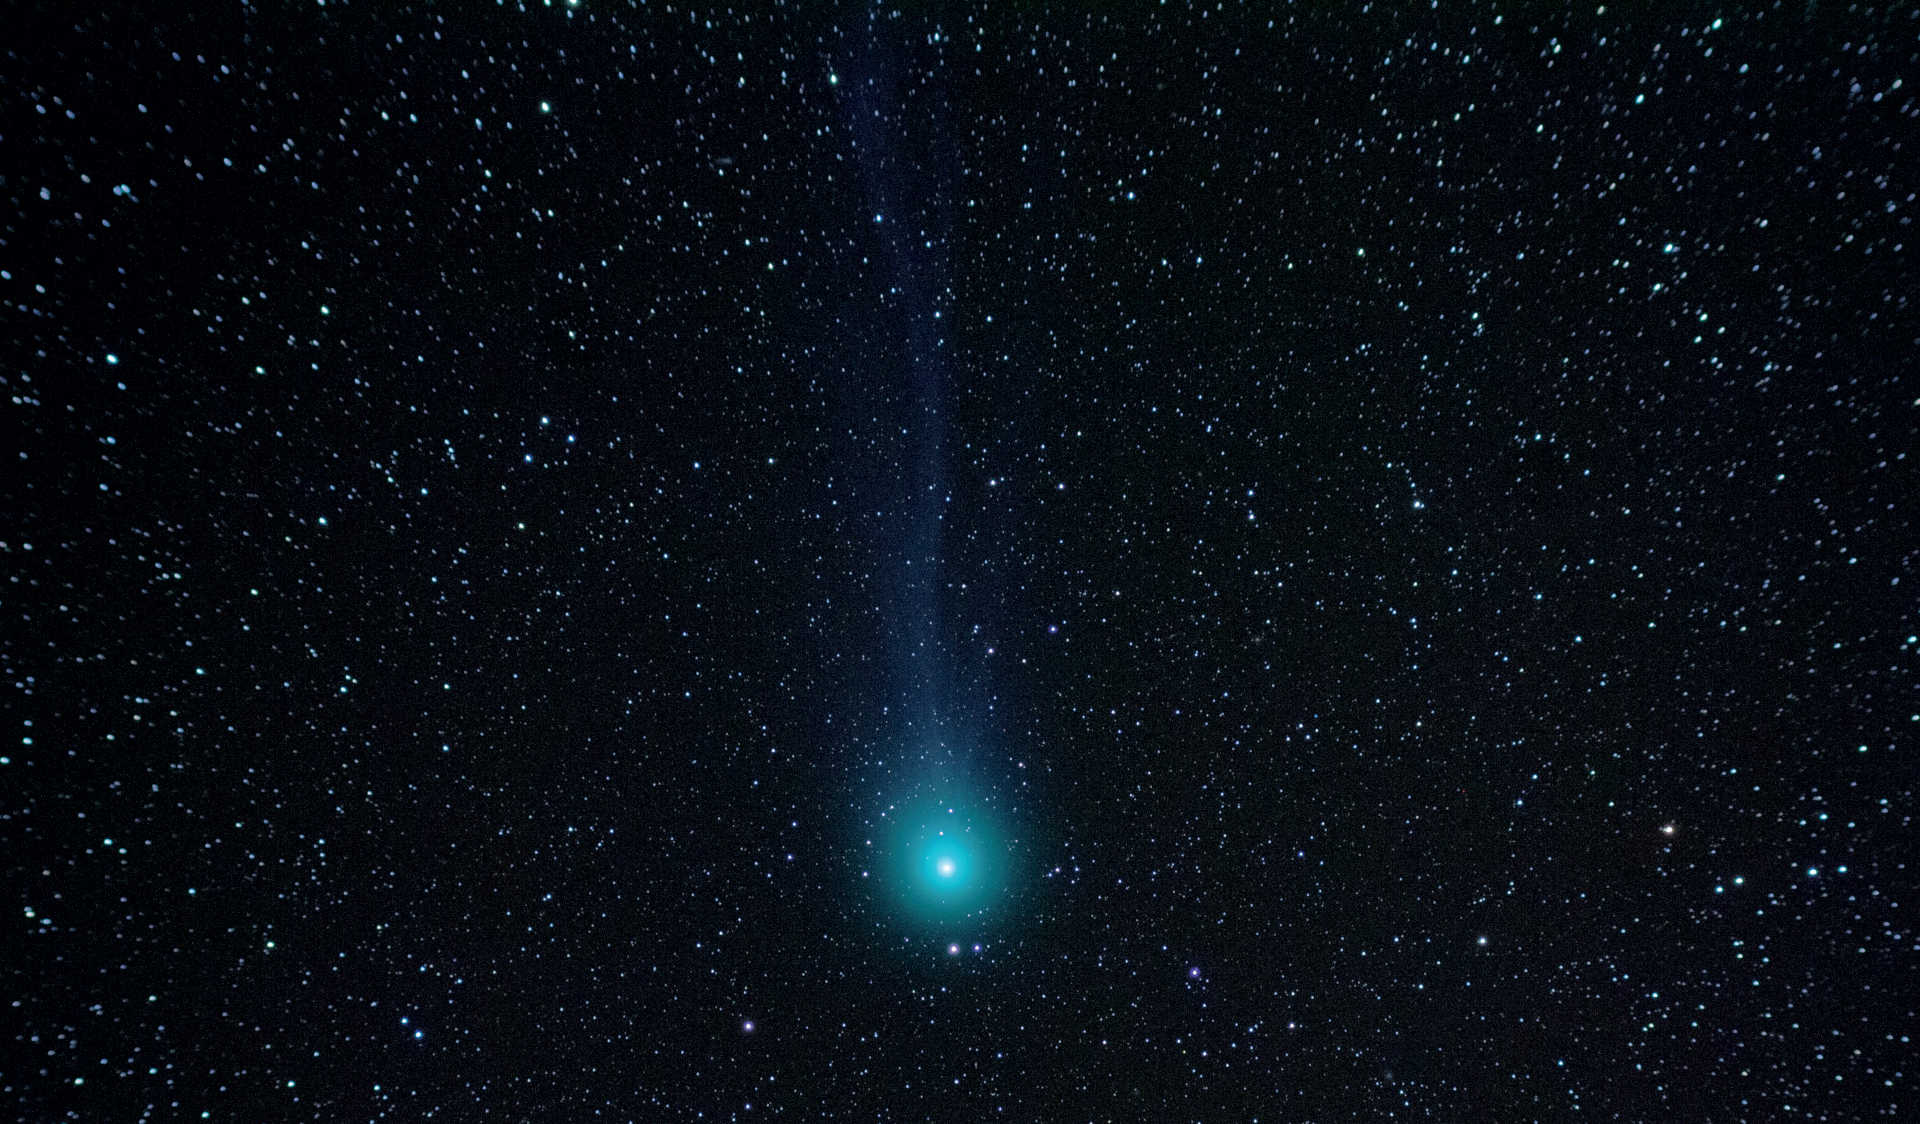 Szczególnym wyzwaniem w fotografii kometarnej jest uwidocznienie warkocza komety. Na tym zdjęciu wykonanym w dniu 7.02.2015 kometa C/2014 Q2 (Lovejoy) pokazuje swój słaby warkocz. Zdjęcie wykonano lustrzanką cyfrową Canon na Takahashi FS-60 (ogniskowa: 355mm; f/5,9). Obraz sumaryczny składa się z pięciu ekspozycji o czasie naświetlania 120 sekund każda. U. Dittler